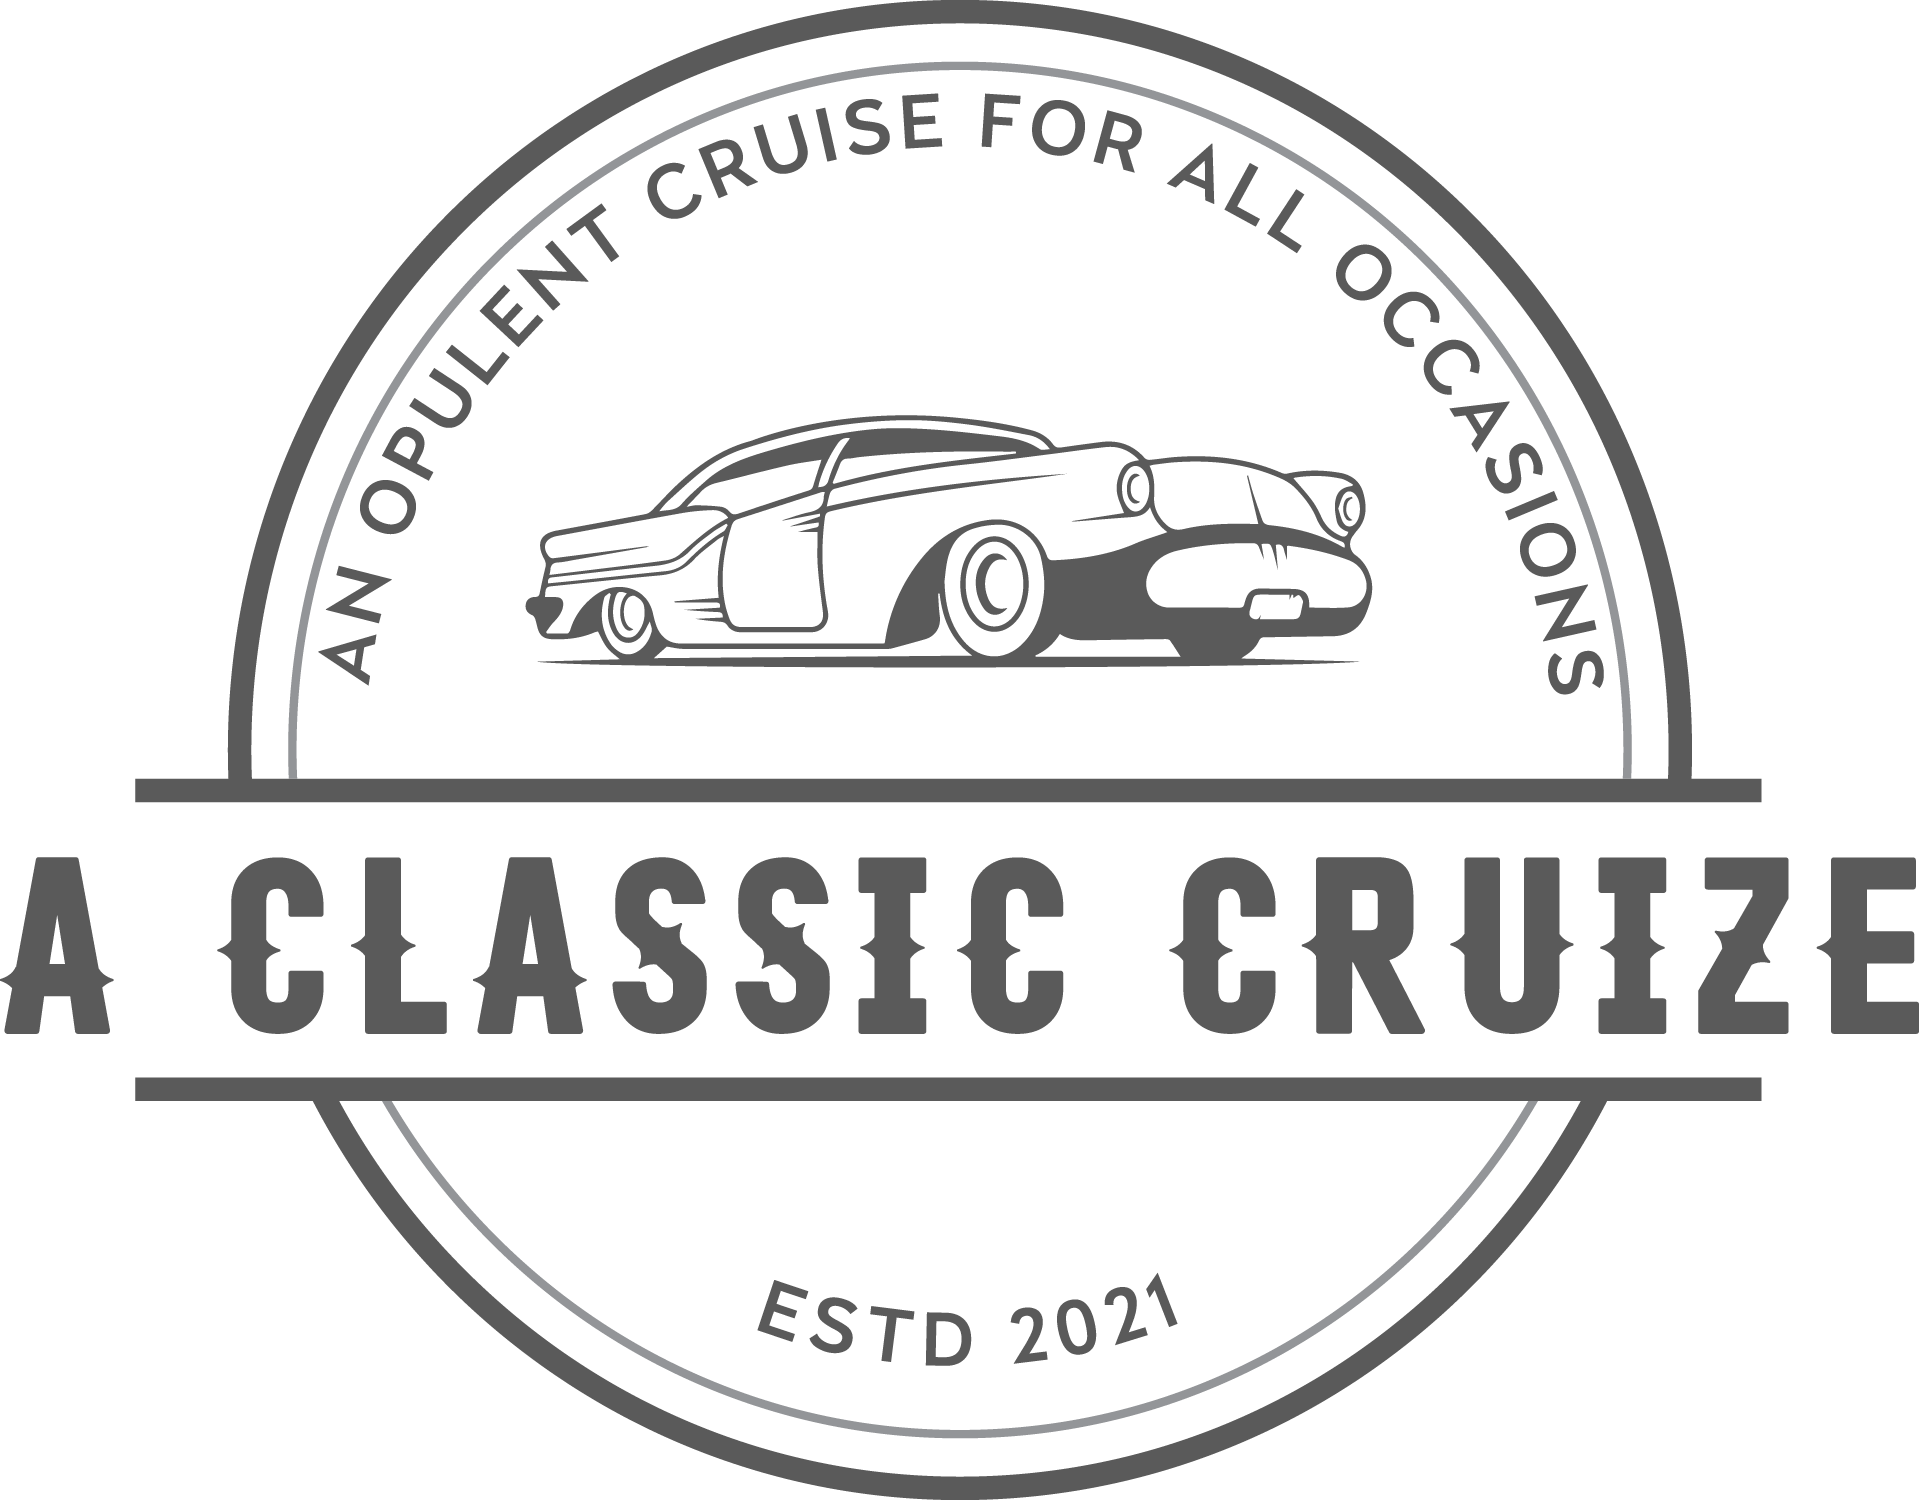 A Classic Cruize